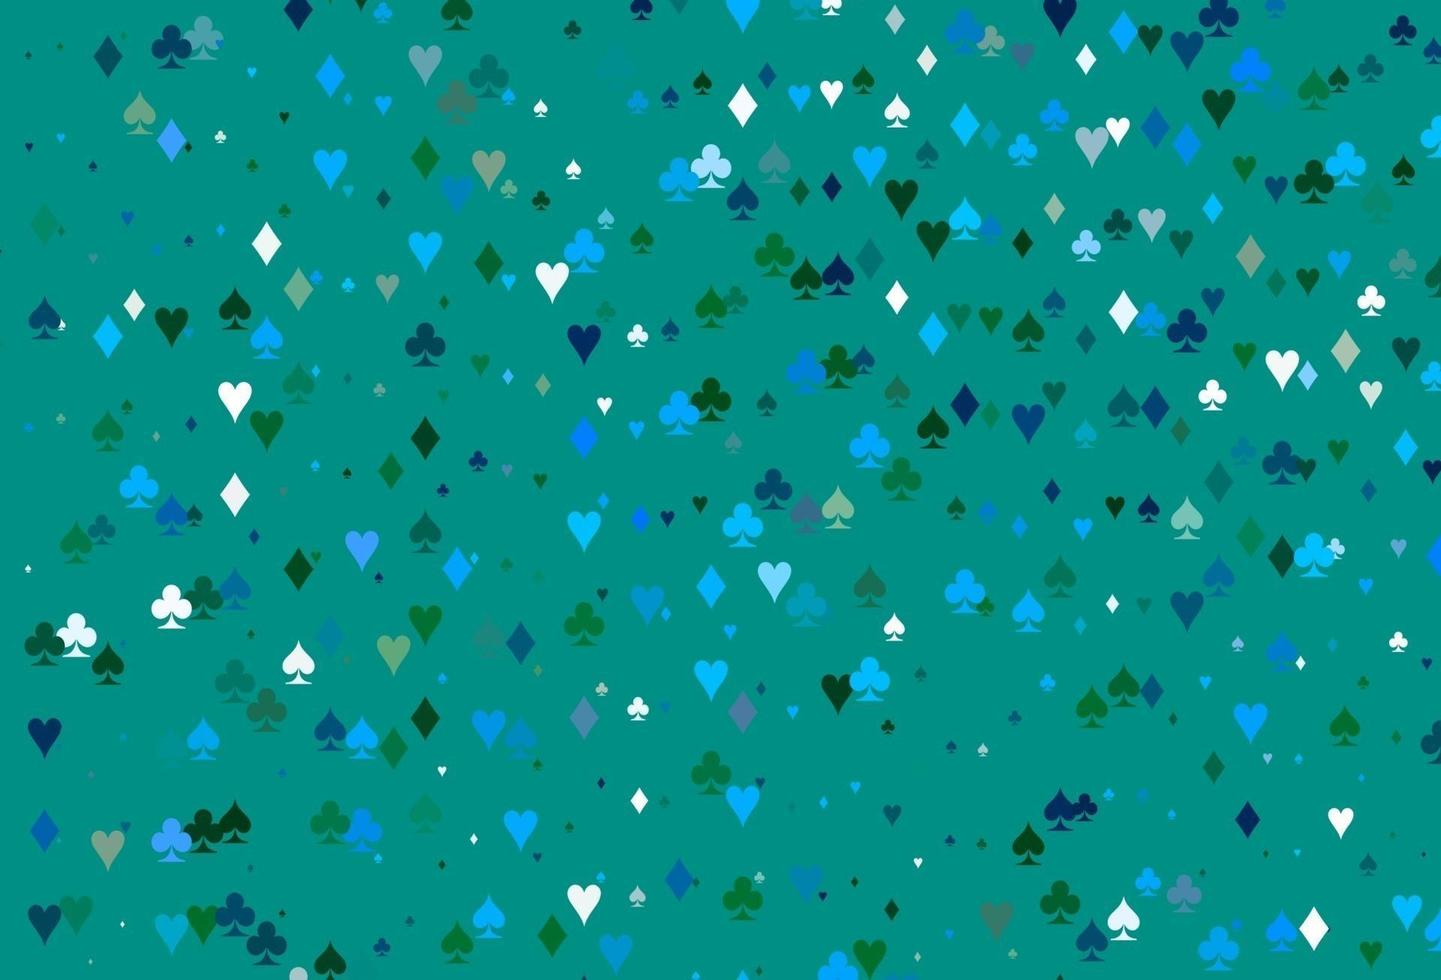 copertina vettoriale azzurra, verde con simboli di gioco.